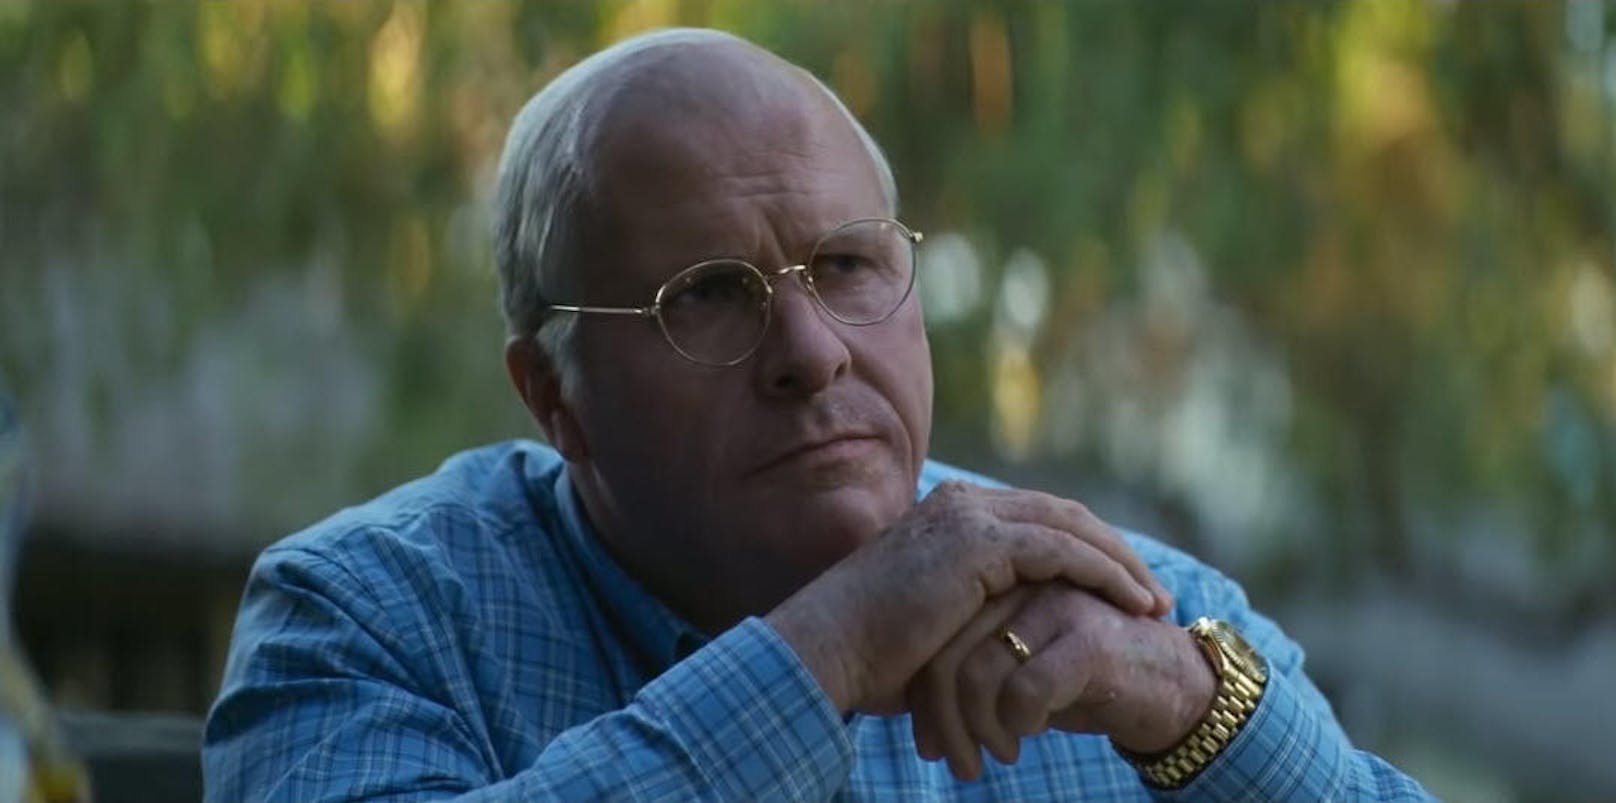 Adam McKays "Vice" ist für sechs Golden Globes nominiert. Unter anderem tritt Christian Bale, der in dem Biopic denm ehemaligen US-Vizepräsidenten Dick Cheney spielt, in der Kategorie der besten Komödien-Darsteller an.